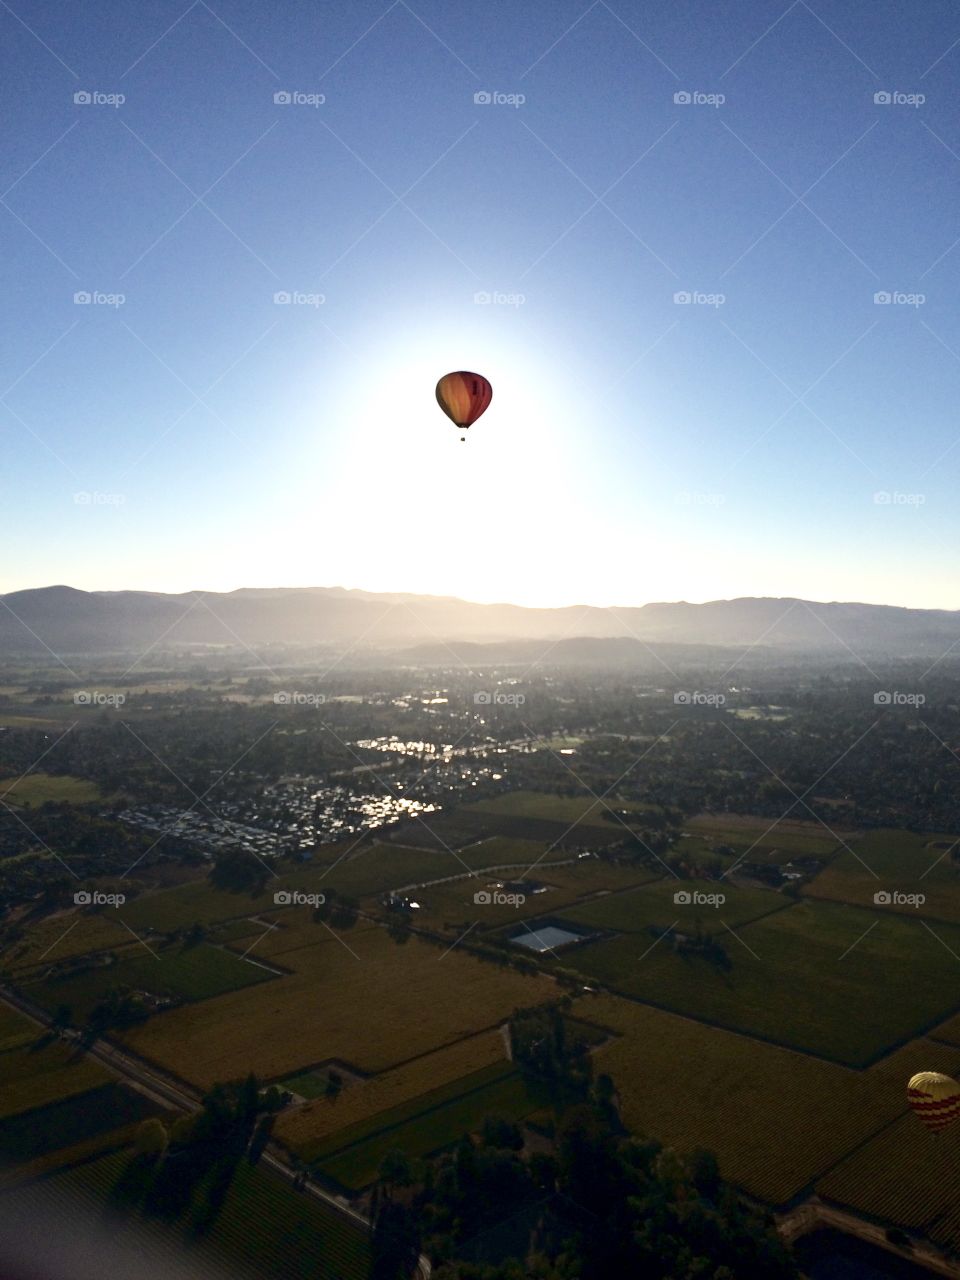 Hot air balloon by the sun 